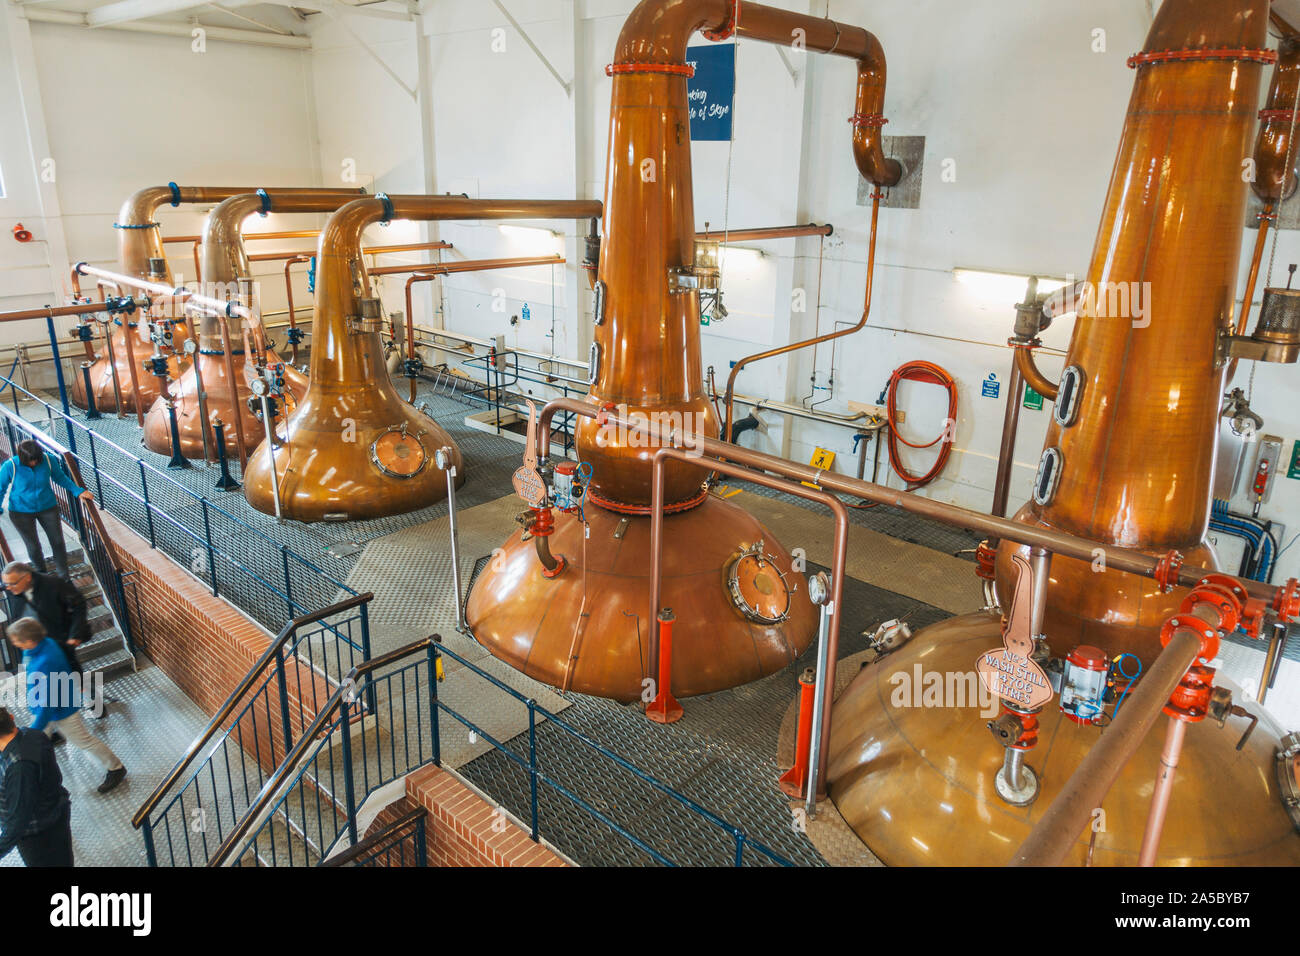 Alambics en cuivre à l'intérieur de la distillerie de whisky Talisker sur l'île de Skye, Écosse Banque D'Images